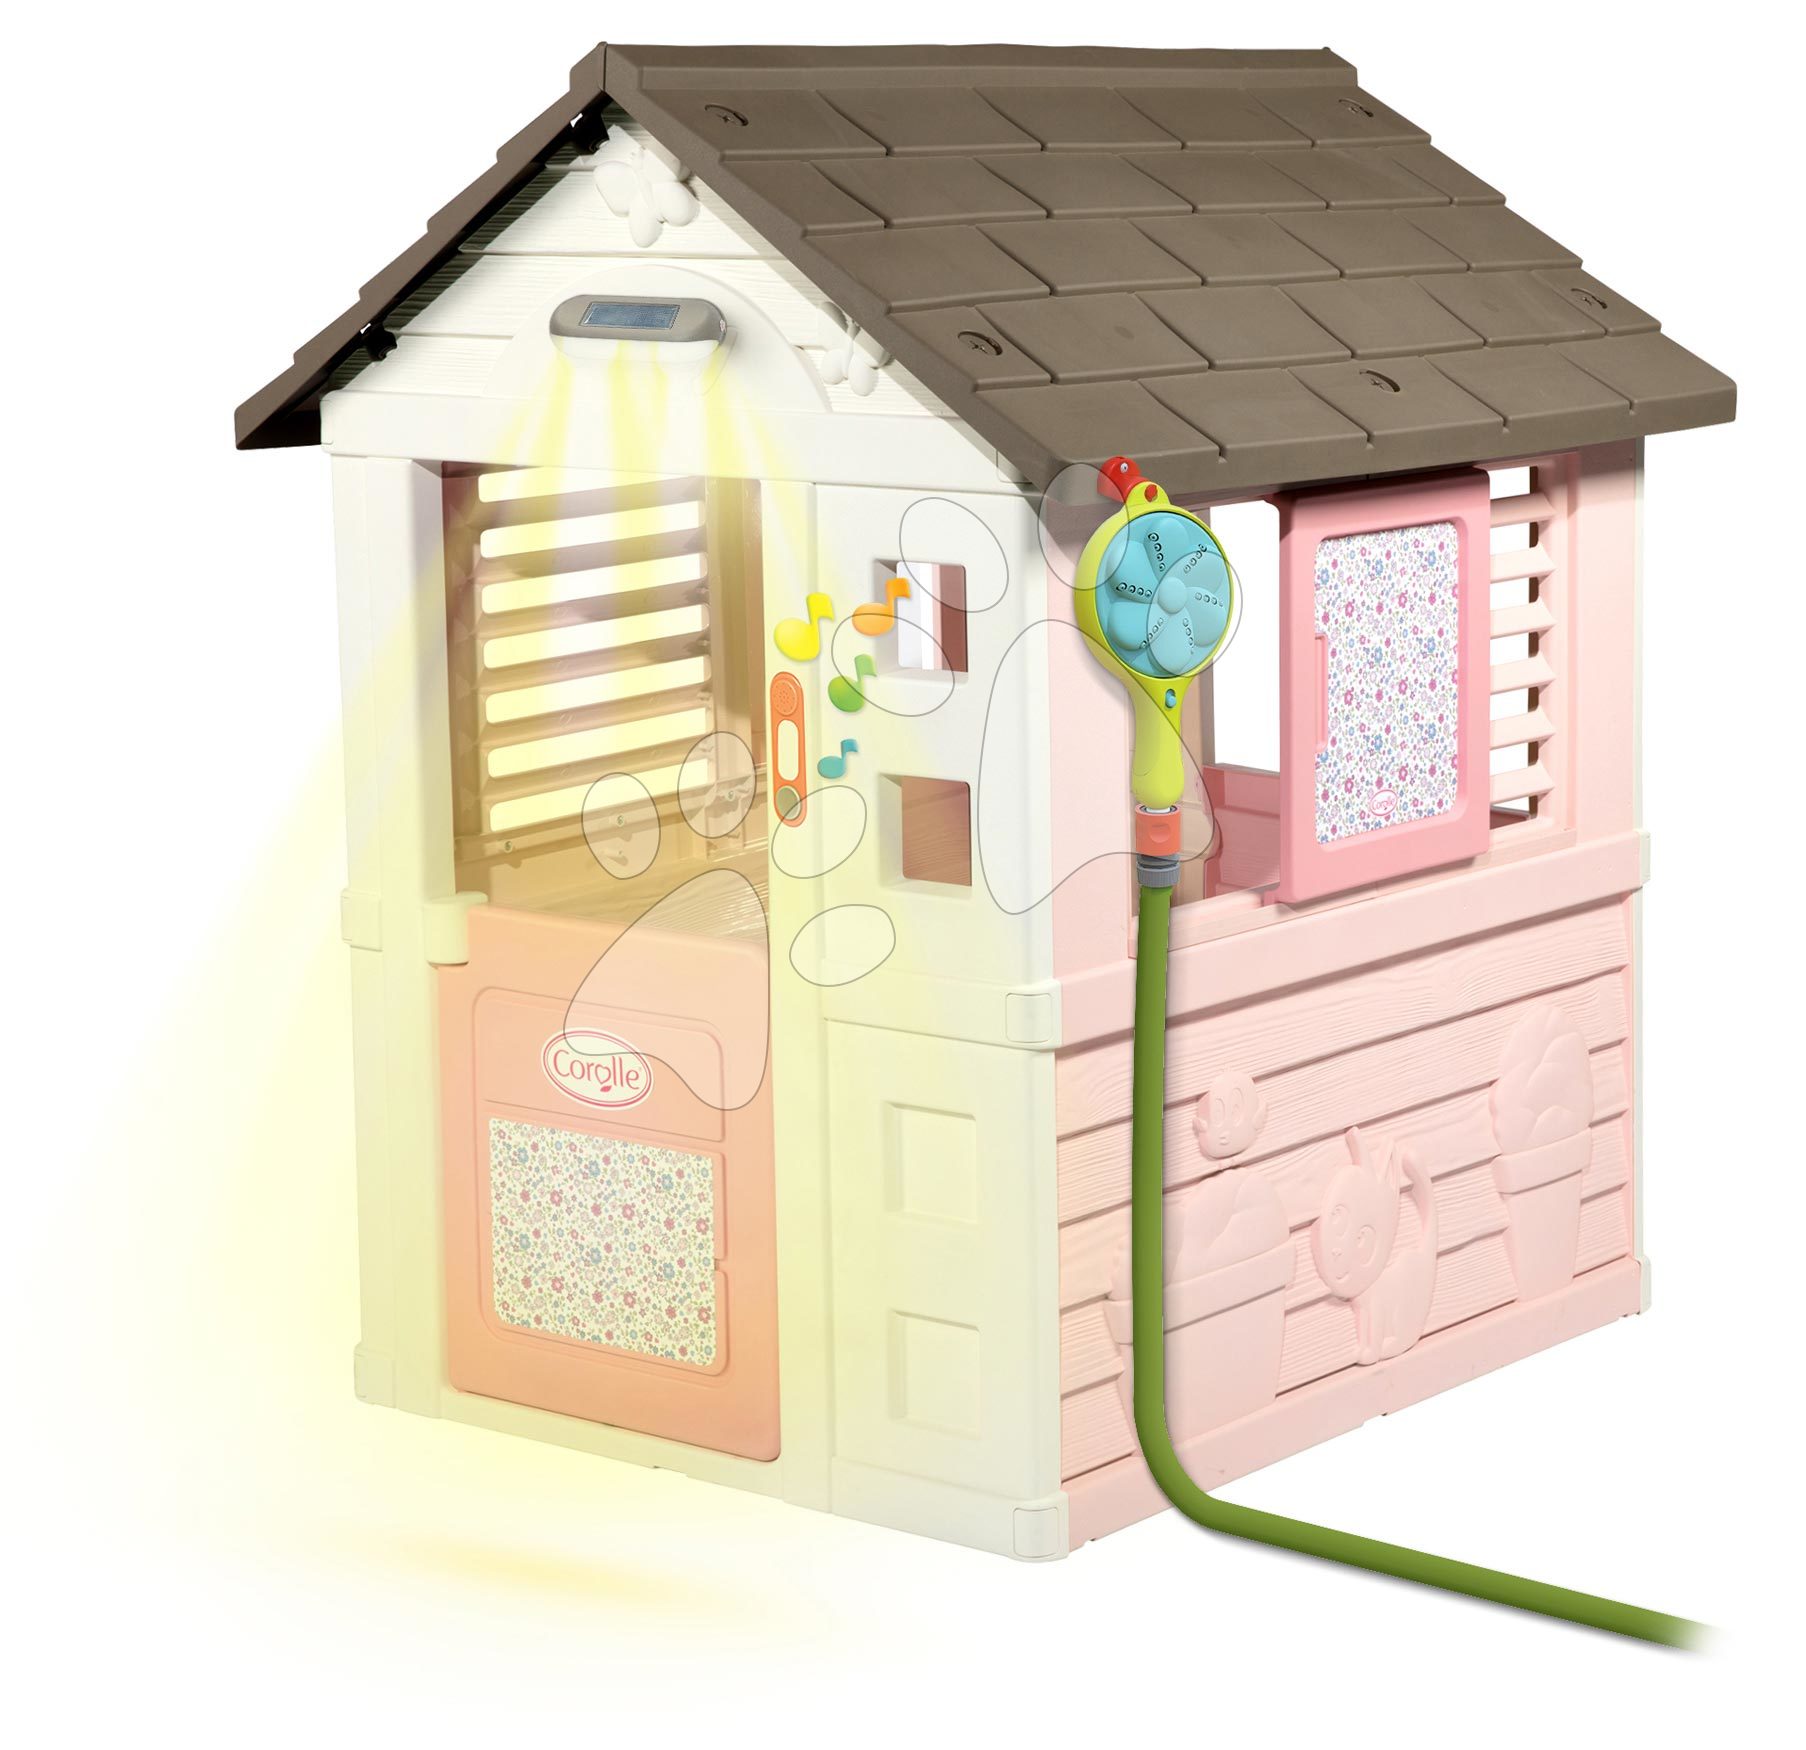 Domčeky pre deti - Domček Corolle Playhouse Smoby so sprchou a zvončekom pod lampou